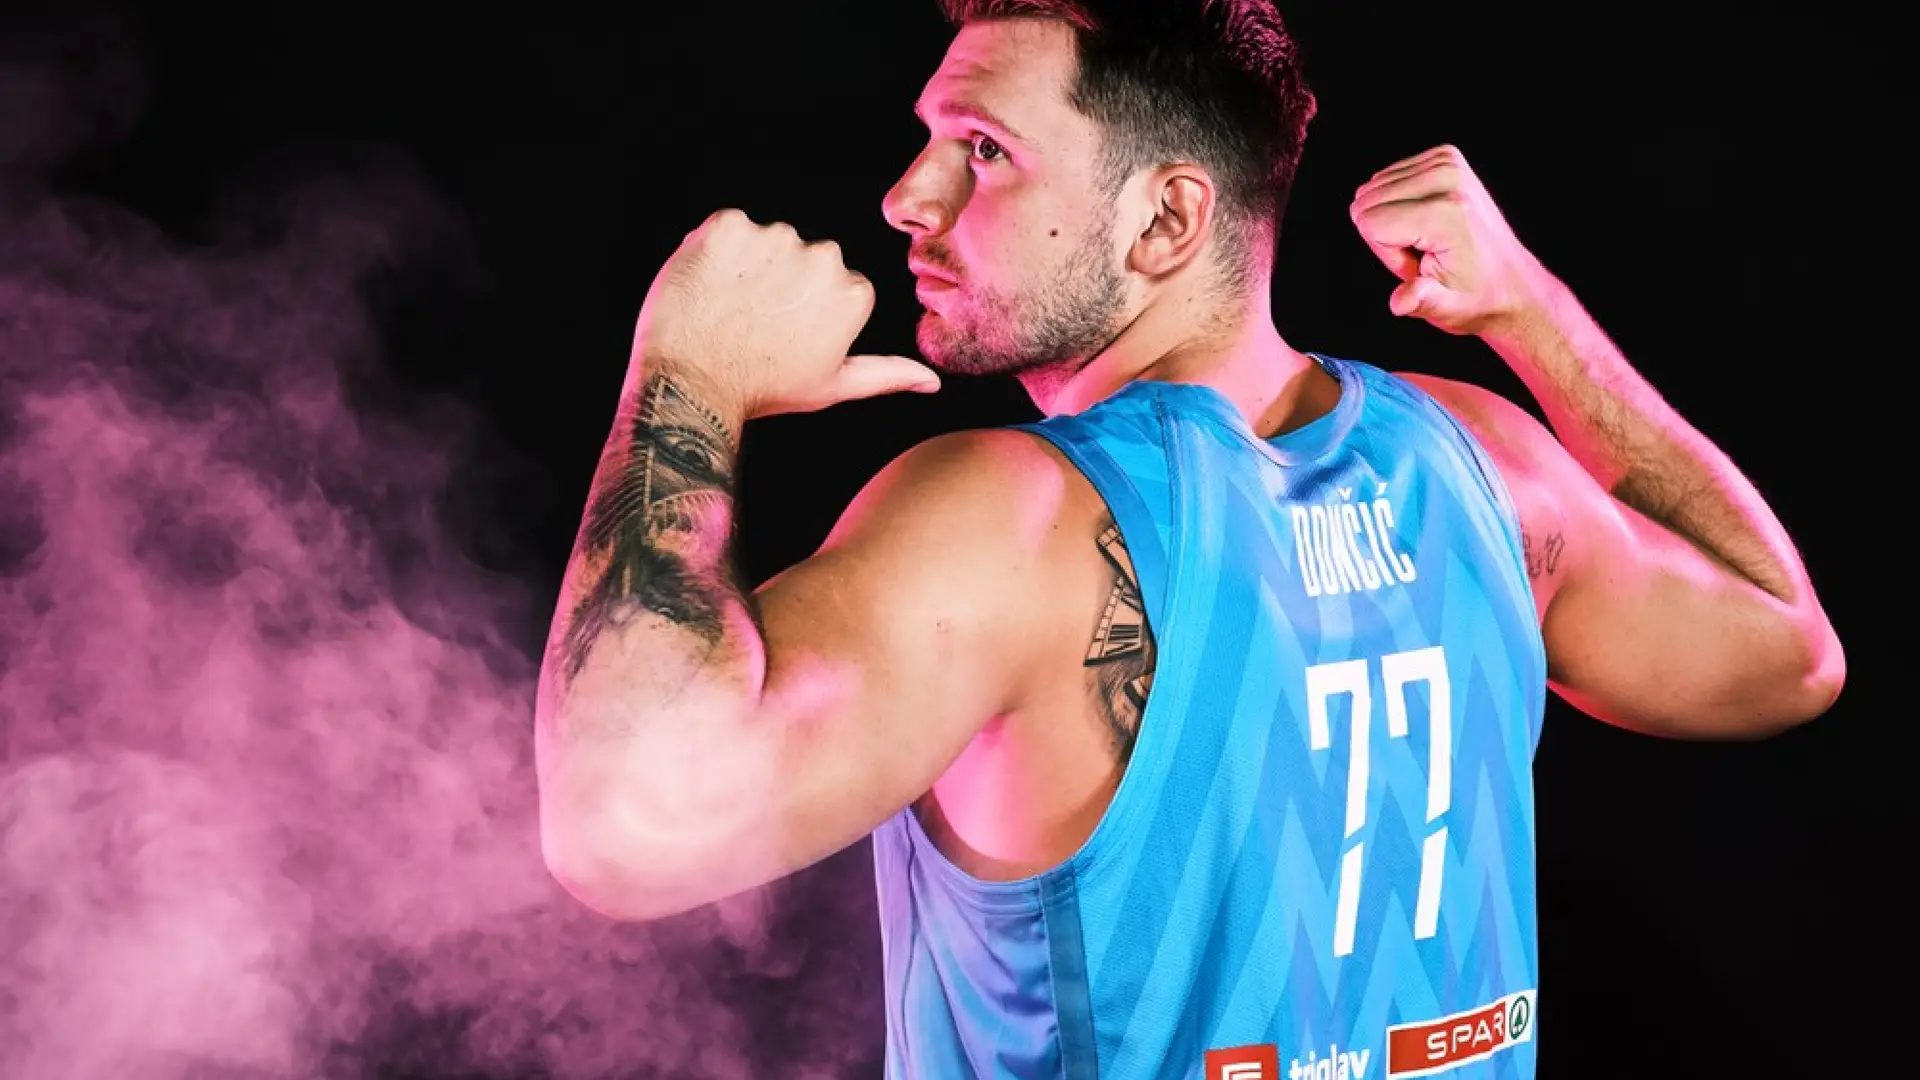 Luka Doncic, un destacado jugador de la seleccion eslovena, que destaca en el grupo F del Mundial de Baloncesto, Fotografía: fiba.basketball